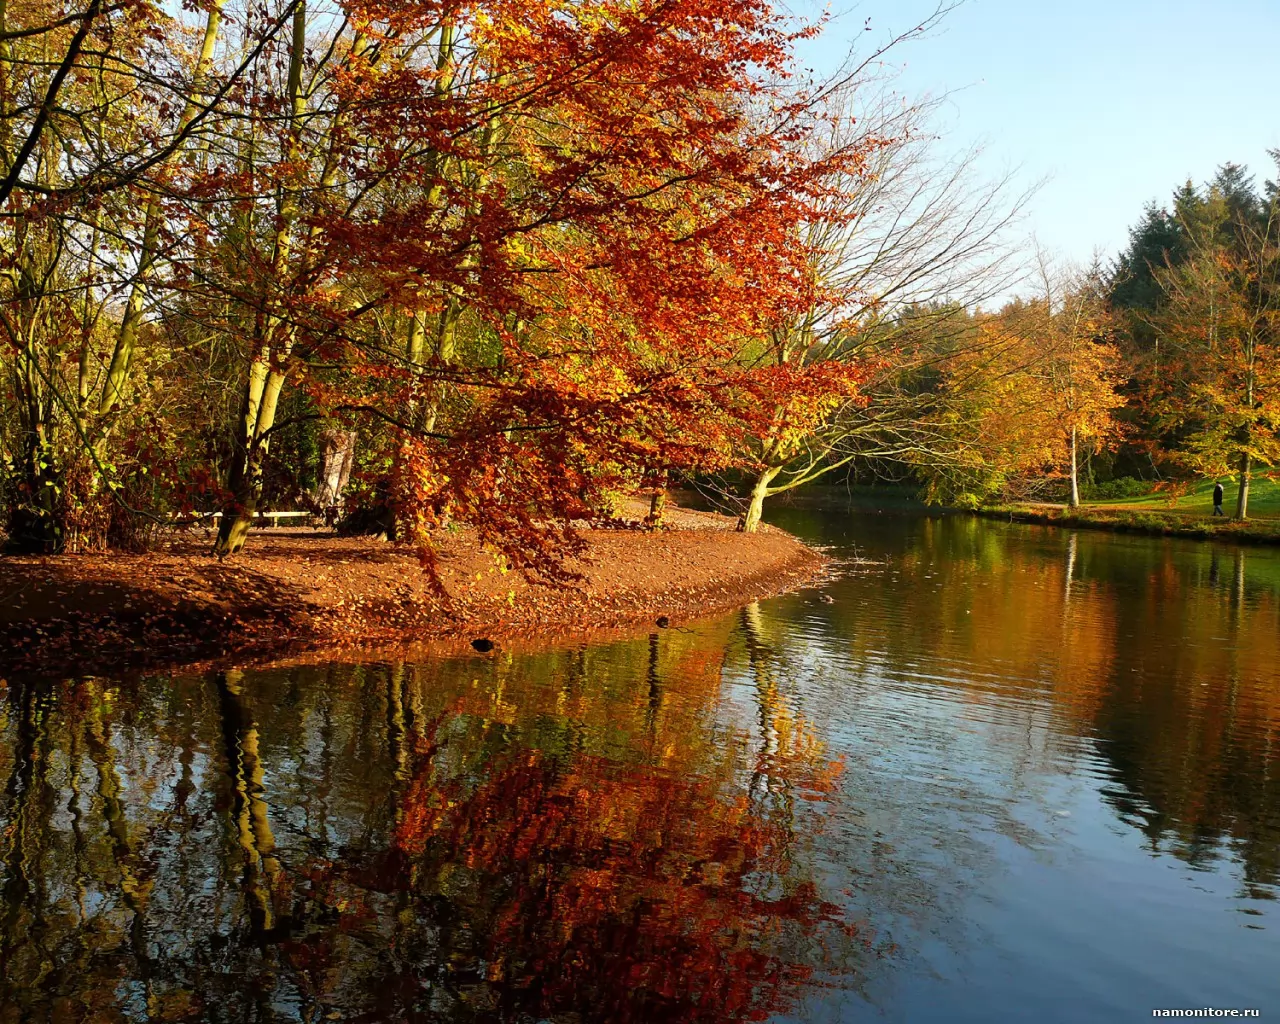 Autumn landscape, autumn, forest, lake, nature x